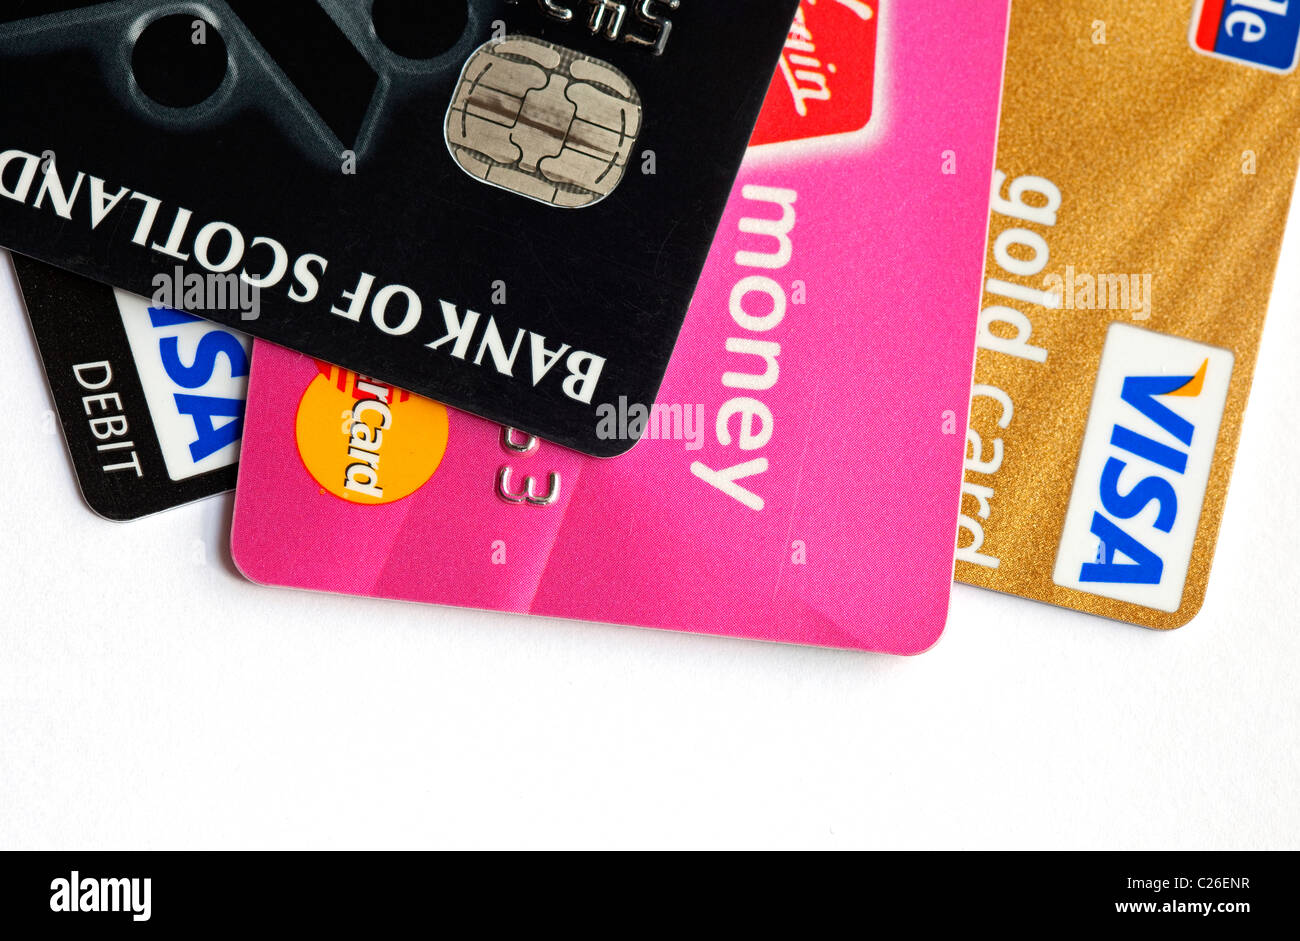 Tarjetas de crédito y débito closeup detalle Foto de stock